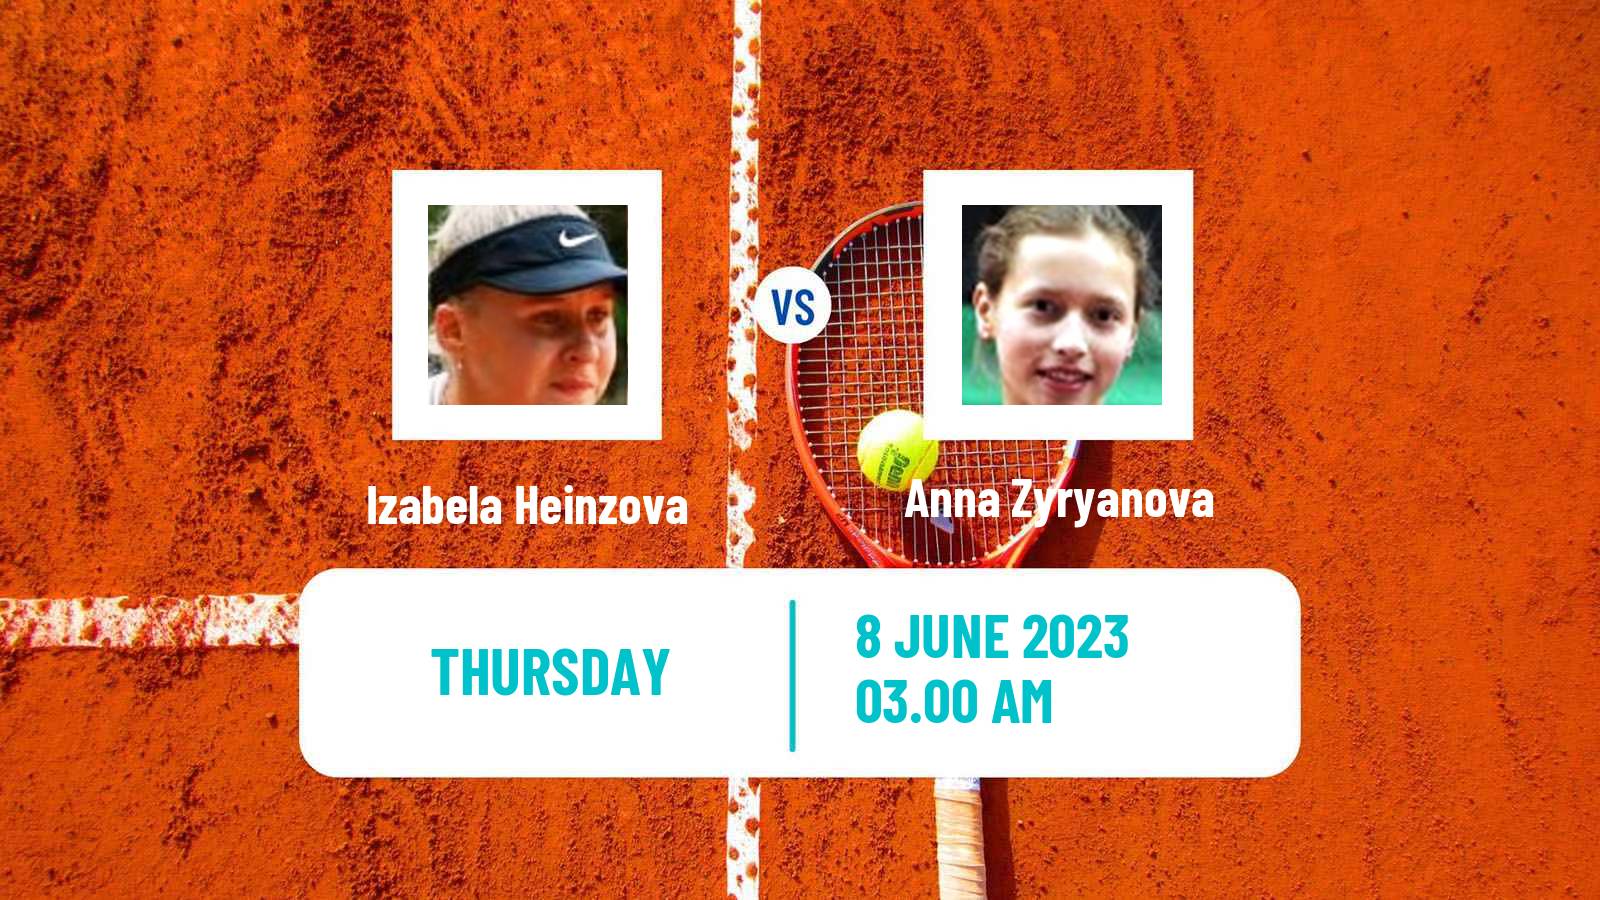 Tennis ITF W15 Kocevje Women Izabela Heinzova - Anna Zyryanova